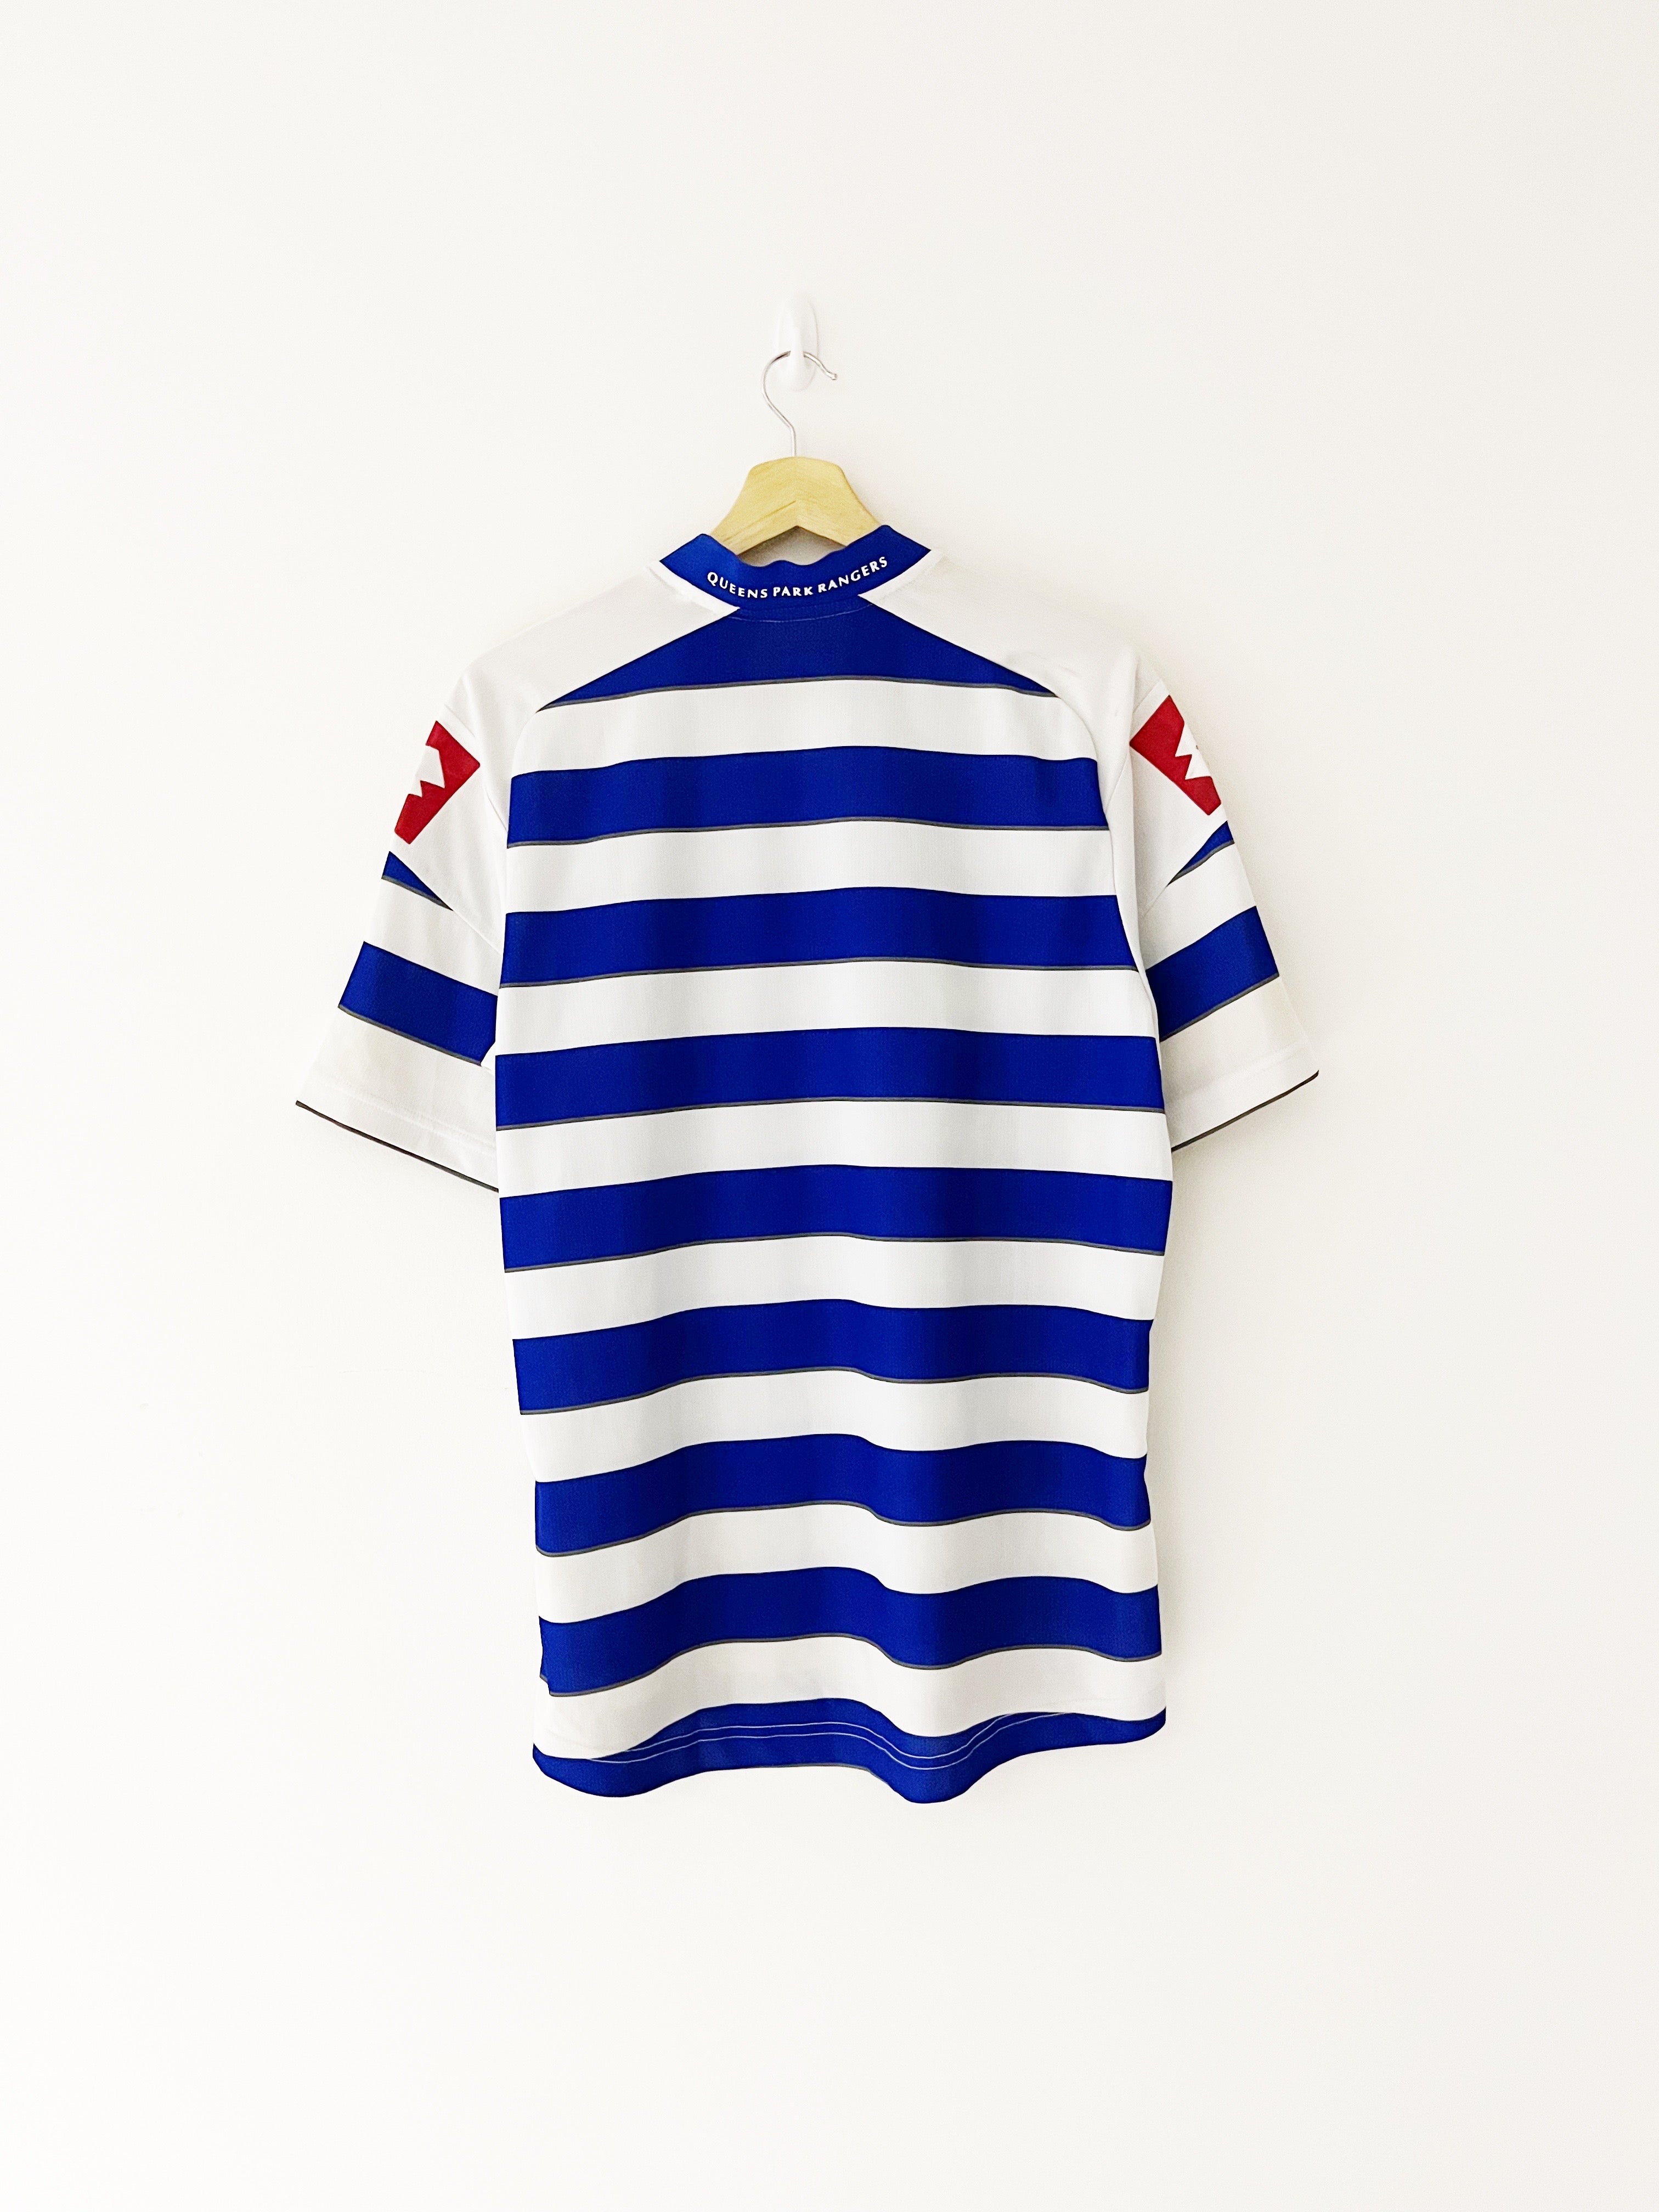 2012/13 QPR Home Shirt (L) 9/10